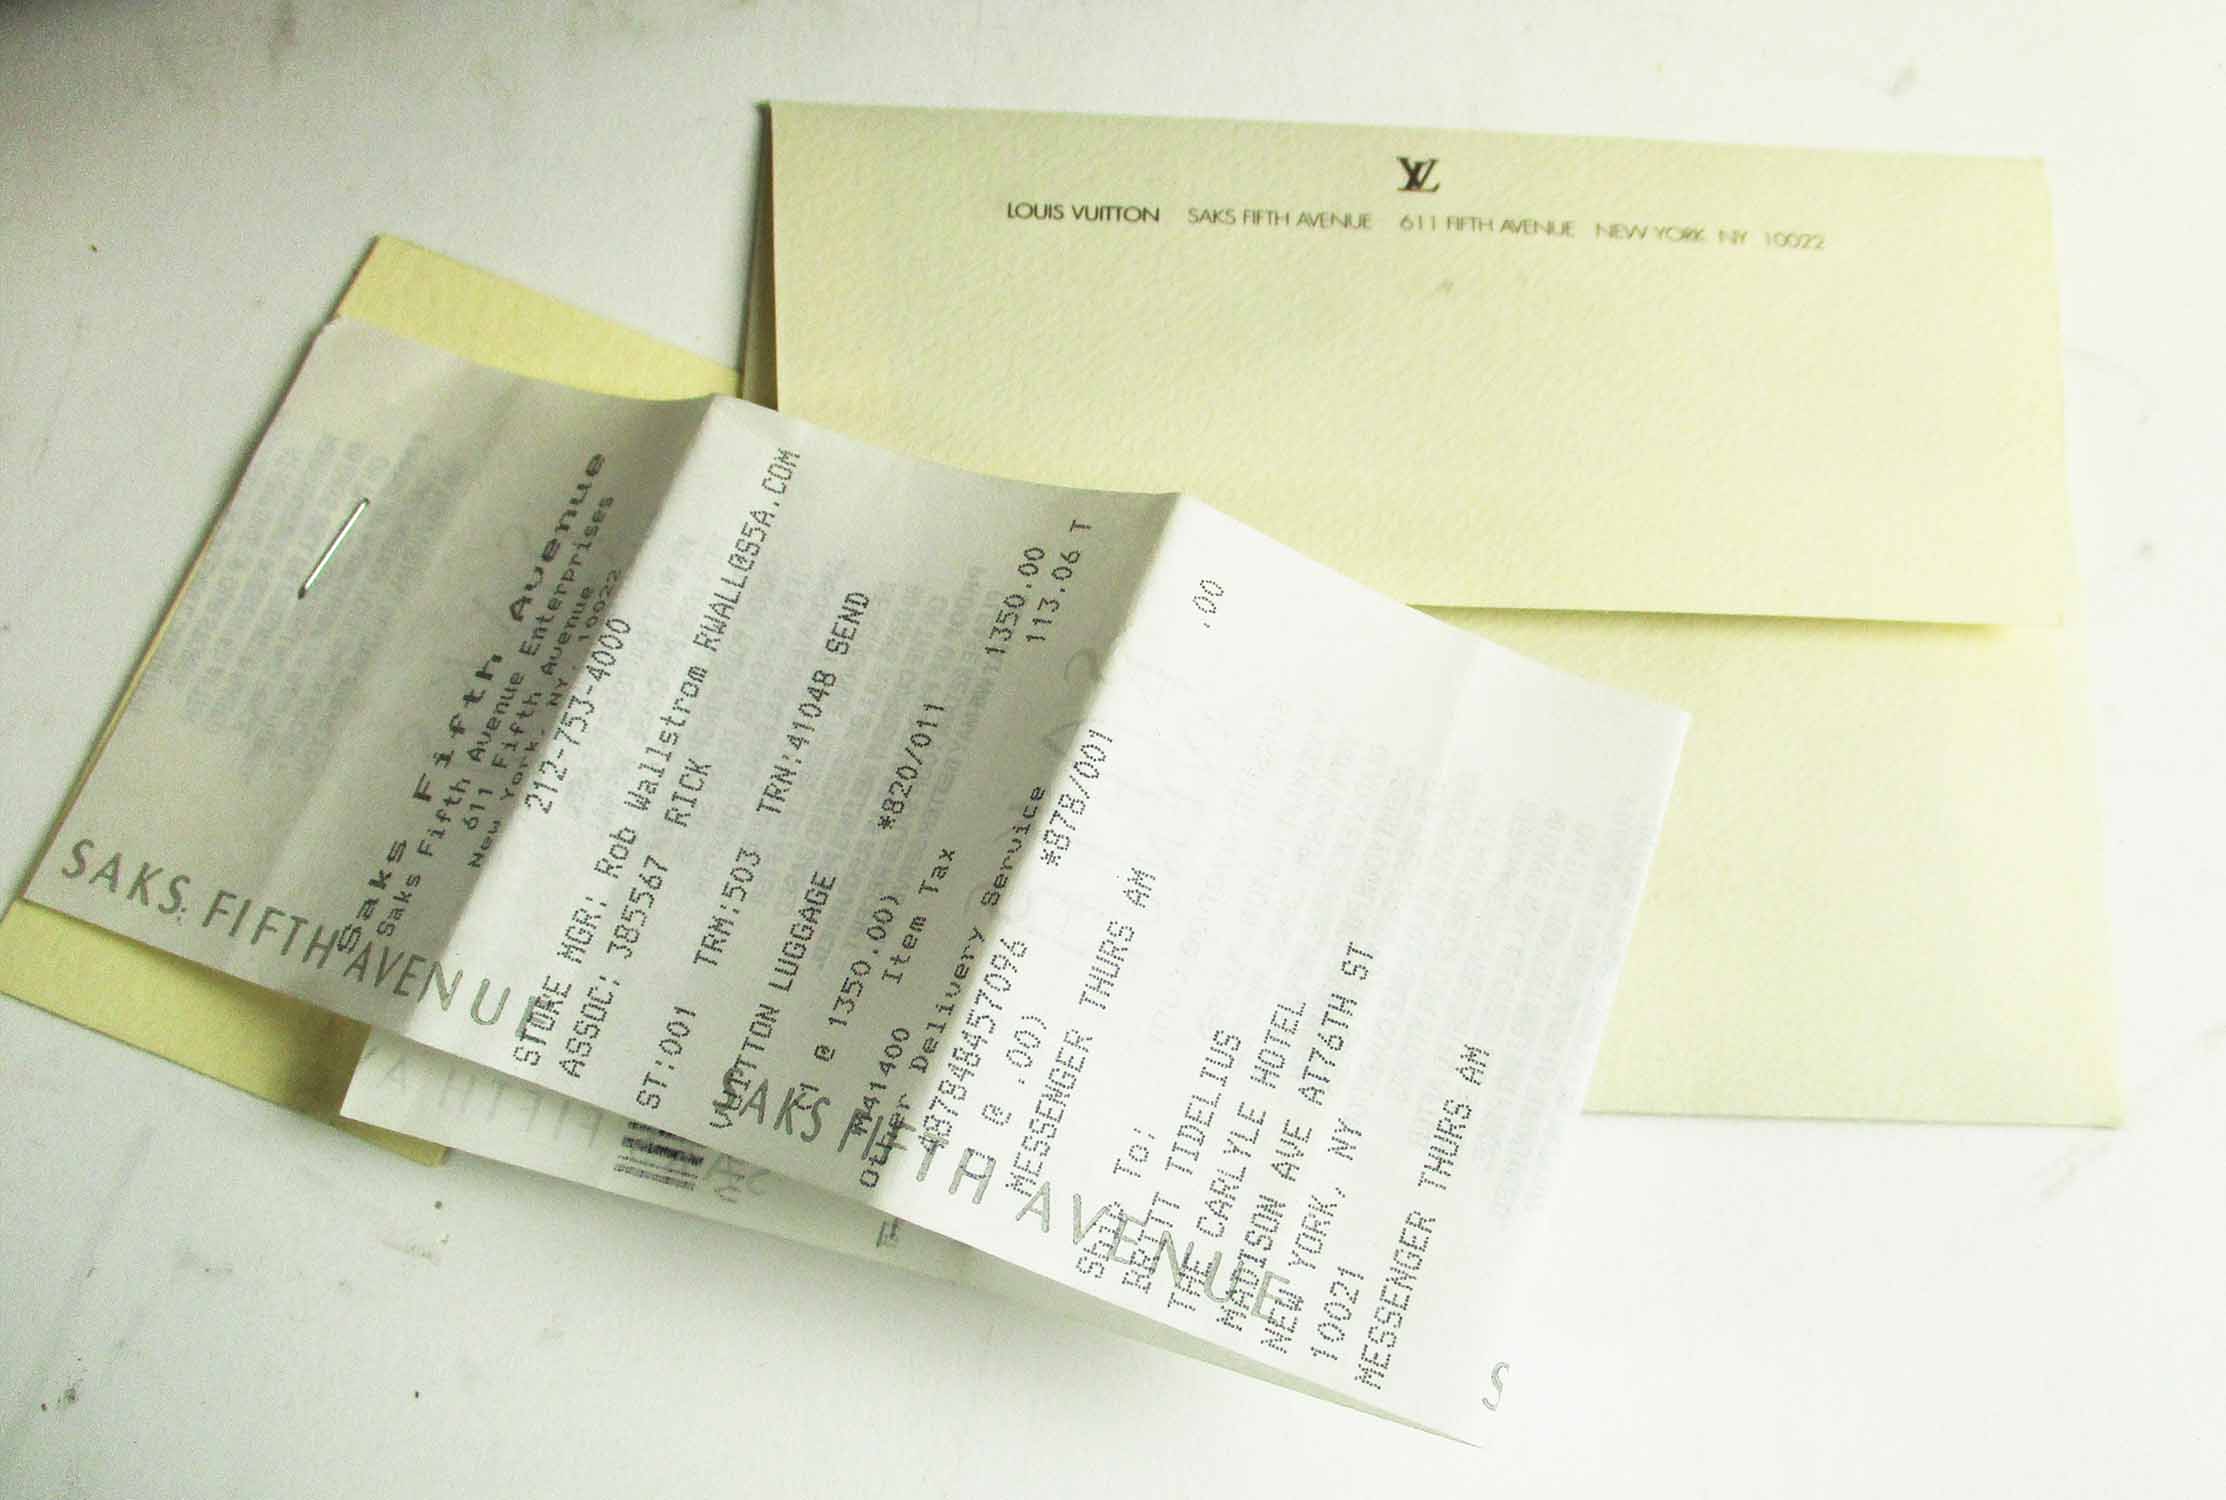 LOUIS VUITTON 'SIRIUS 70' MONOGRAM SUITCASE, plus original 'Saks Fifth  Avenue' bill of sale.